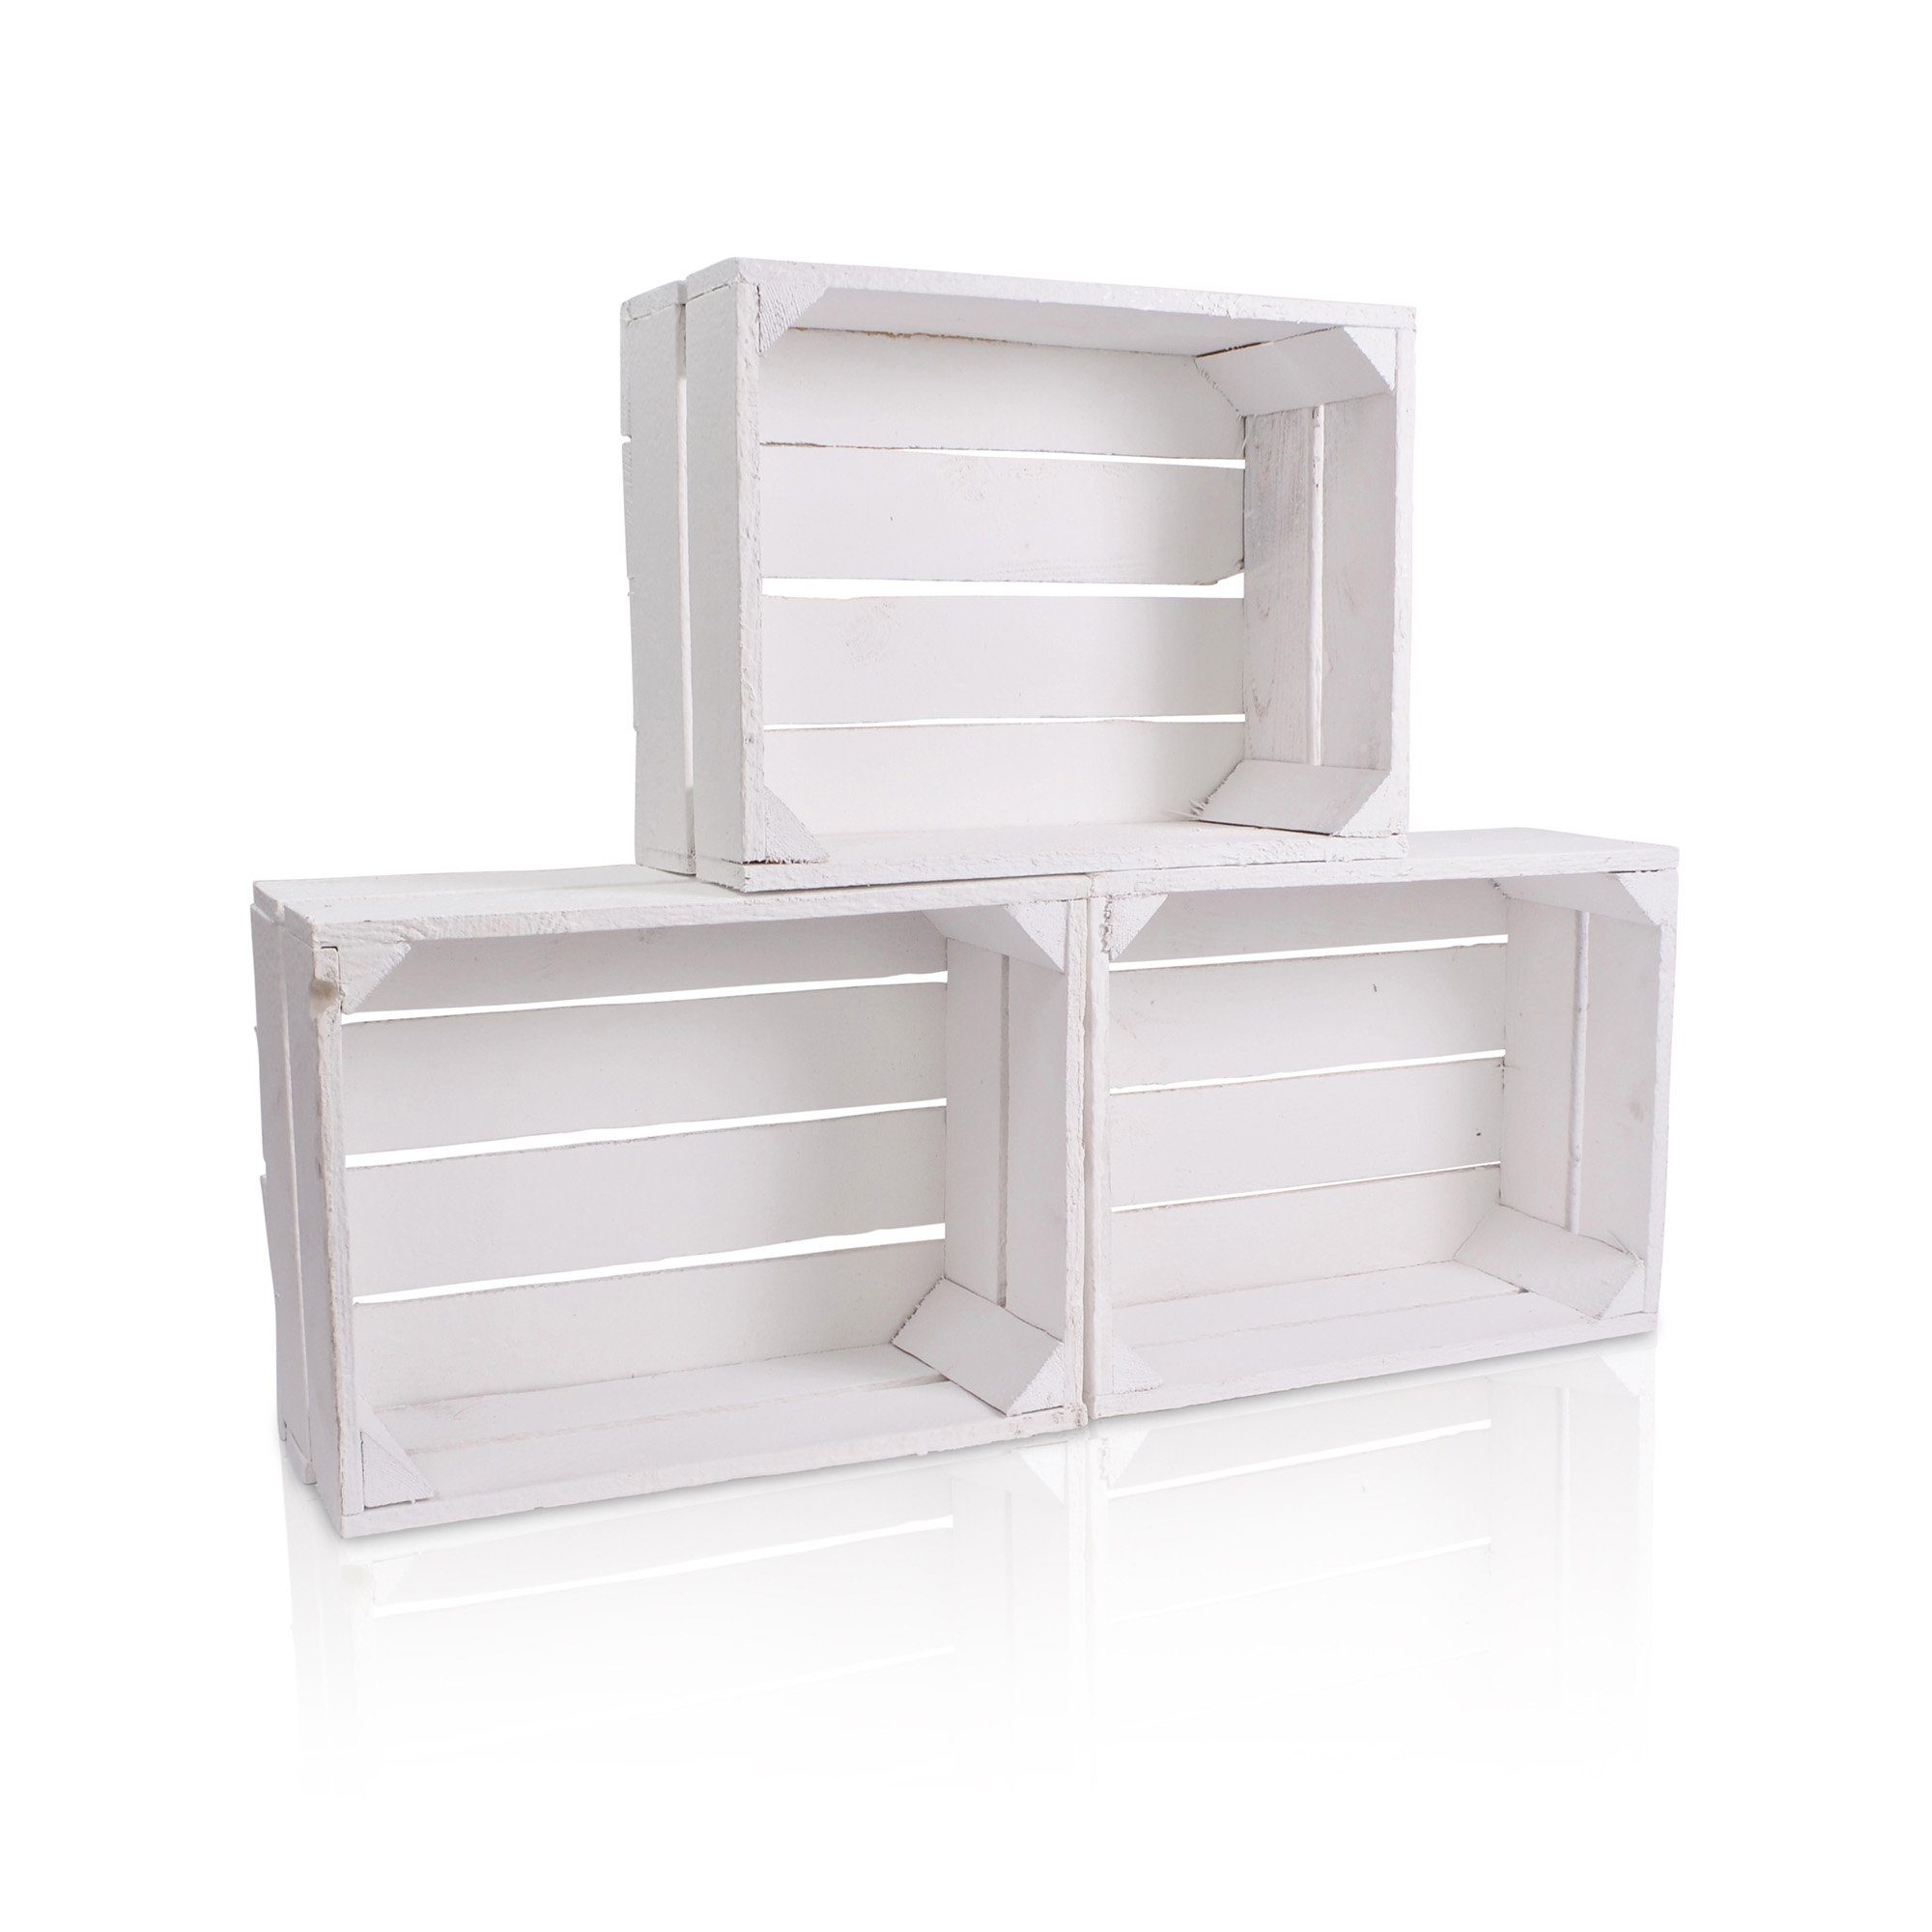 CHICCIE Holzkiste Regale Weiß 38x28x15cm - Kiste Aufbewahrungsbox (3 St)